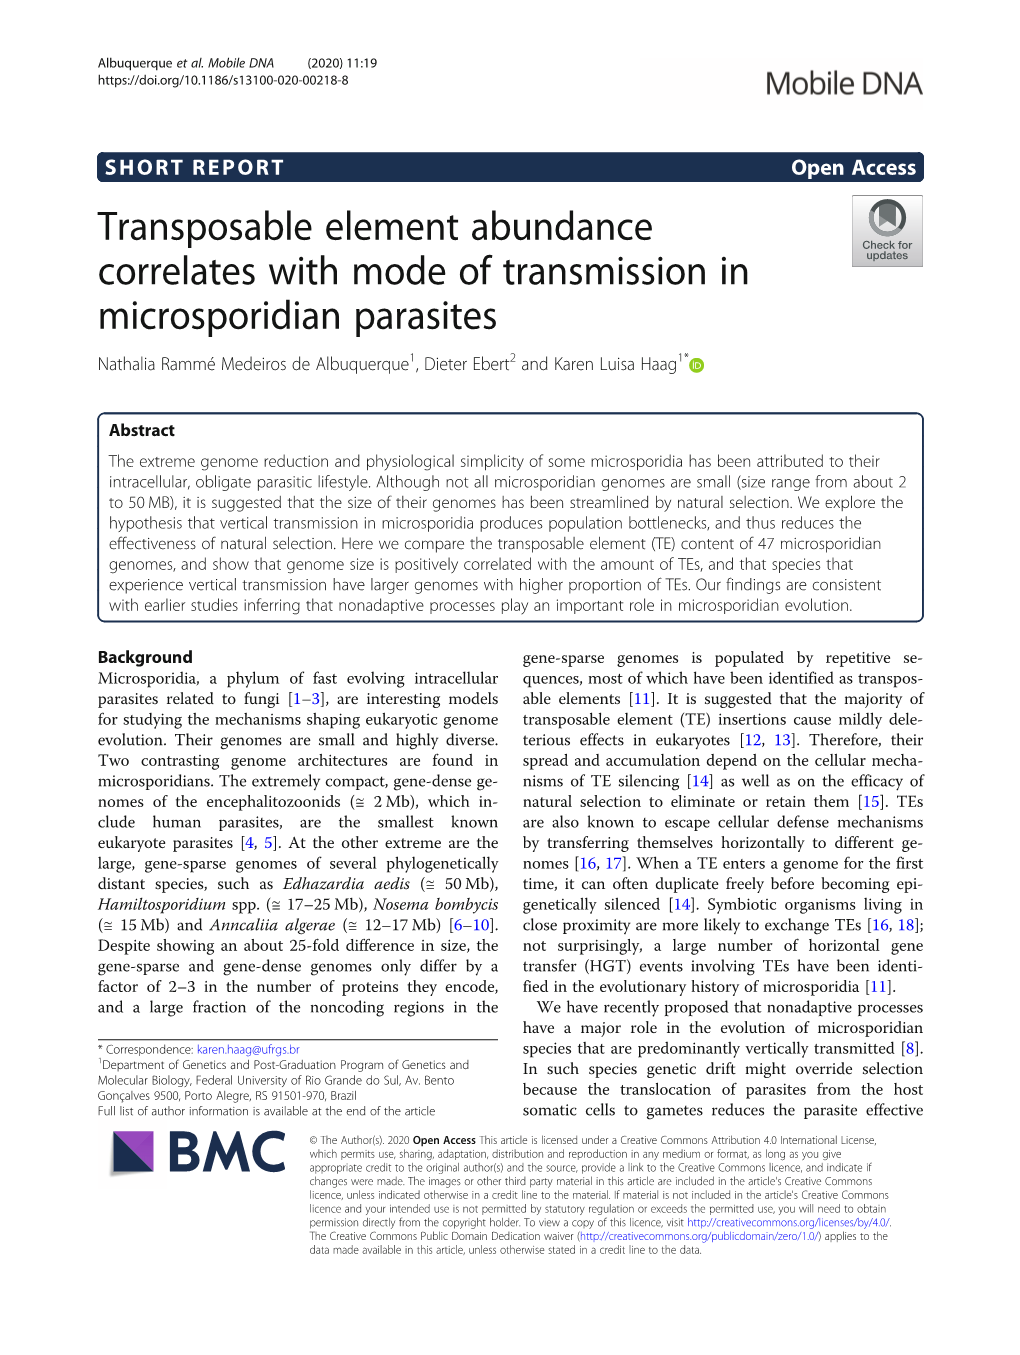 Transposable Element Abundance Correlates with Mode Of